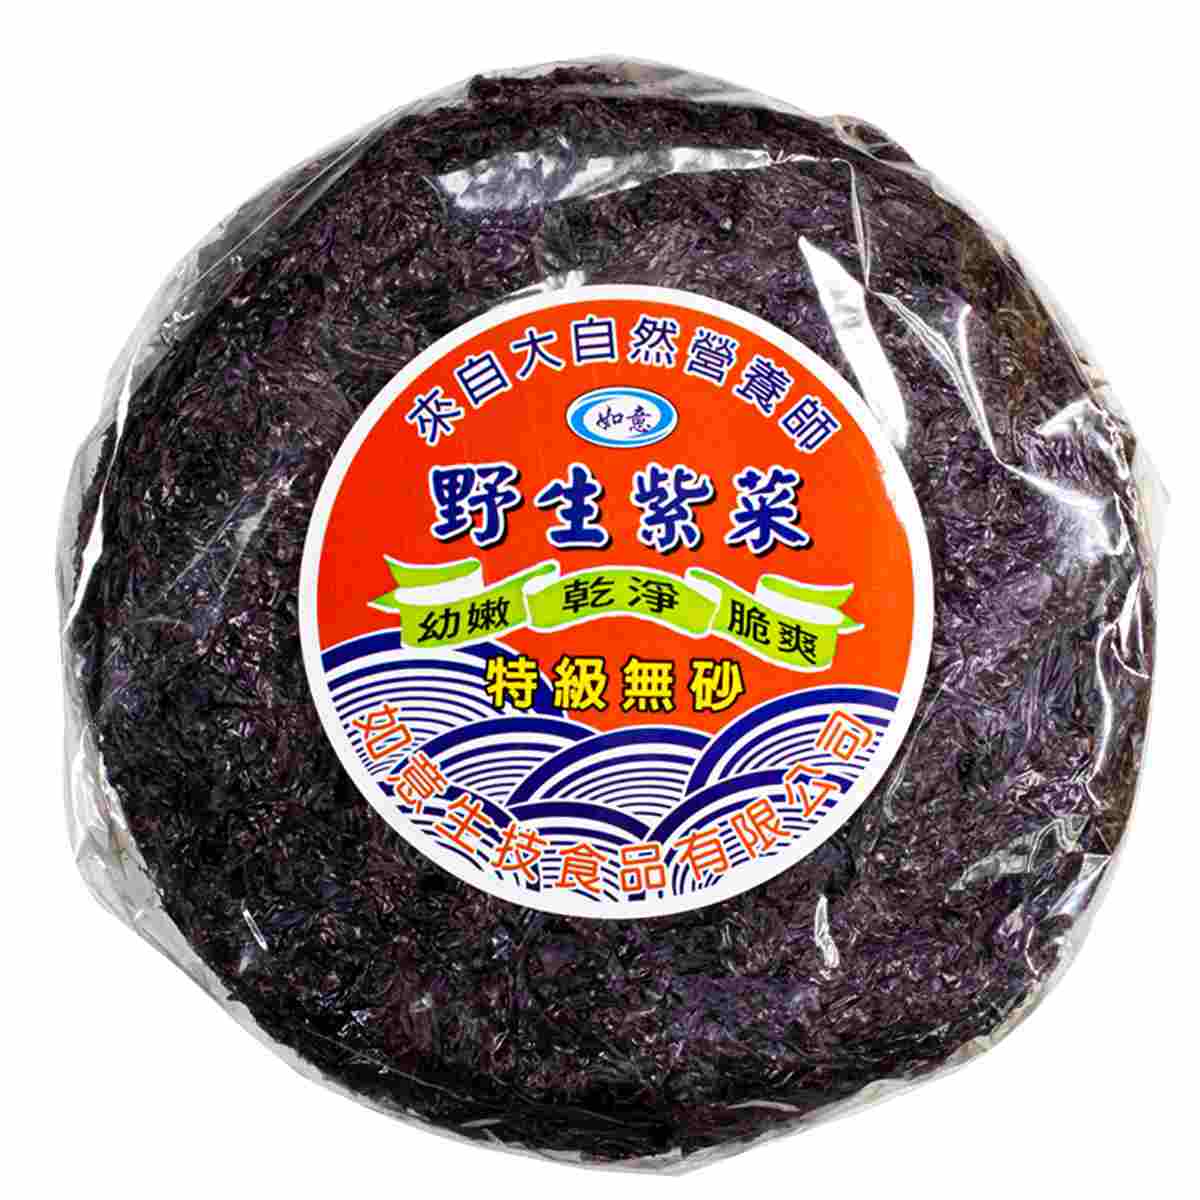 Image Dried Seaweed 如意-无砂紫菜 80grams